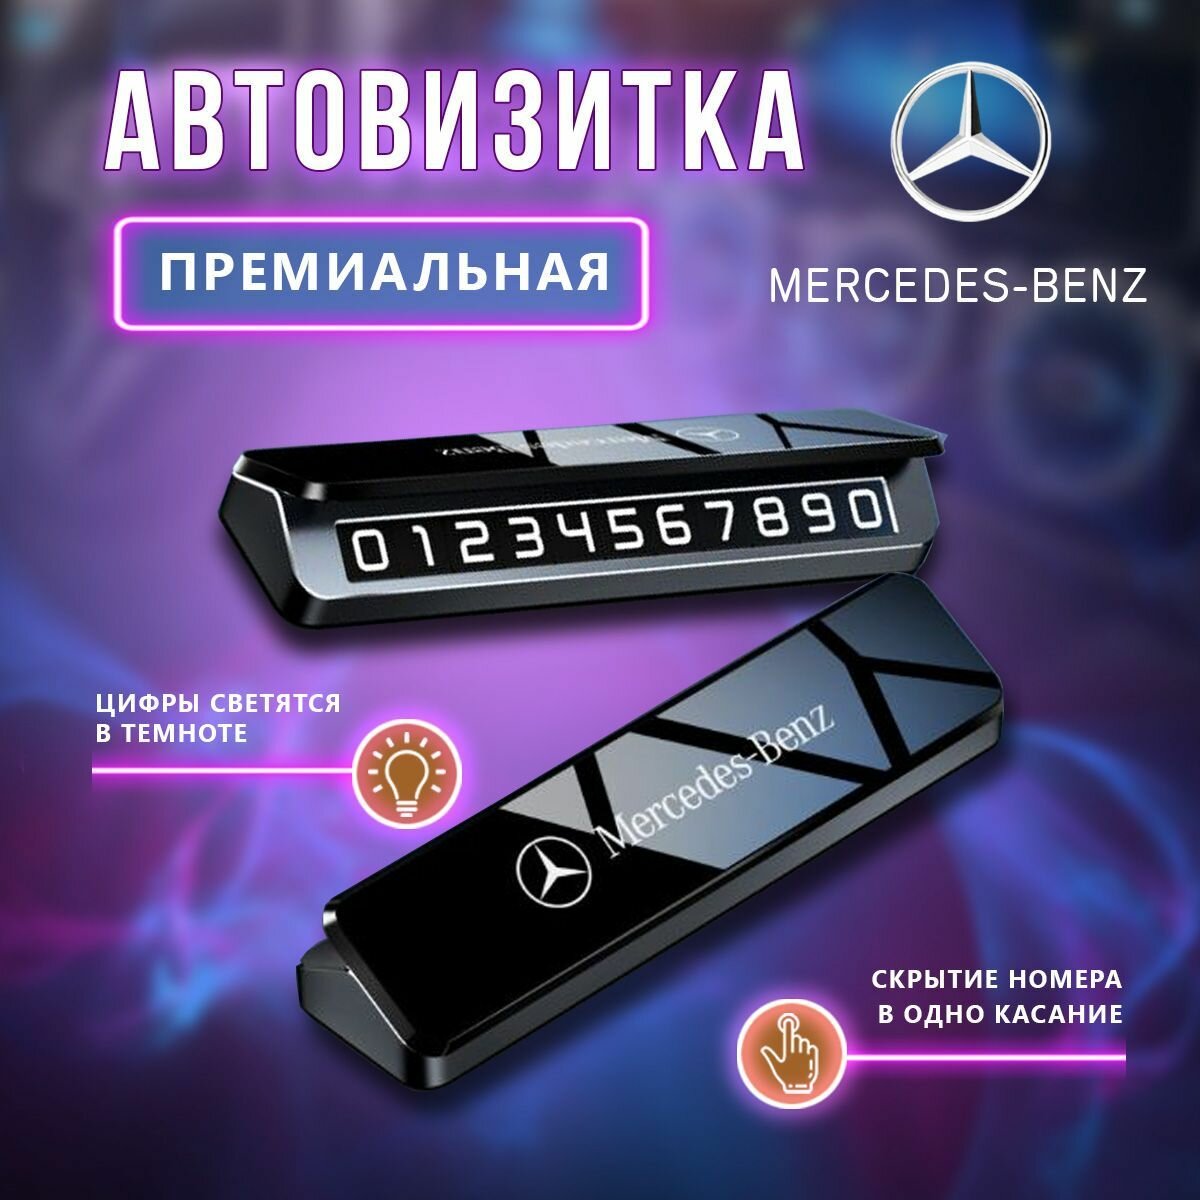 Премиальная парковочная визитка Mercedes-Benz